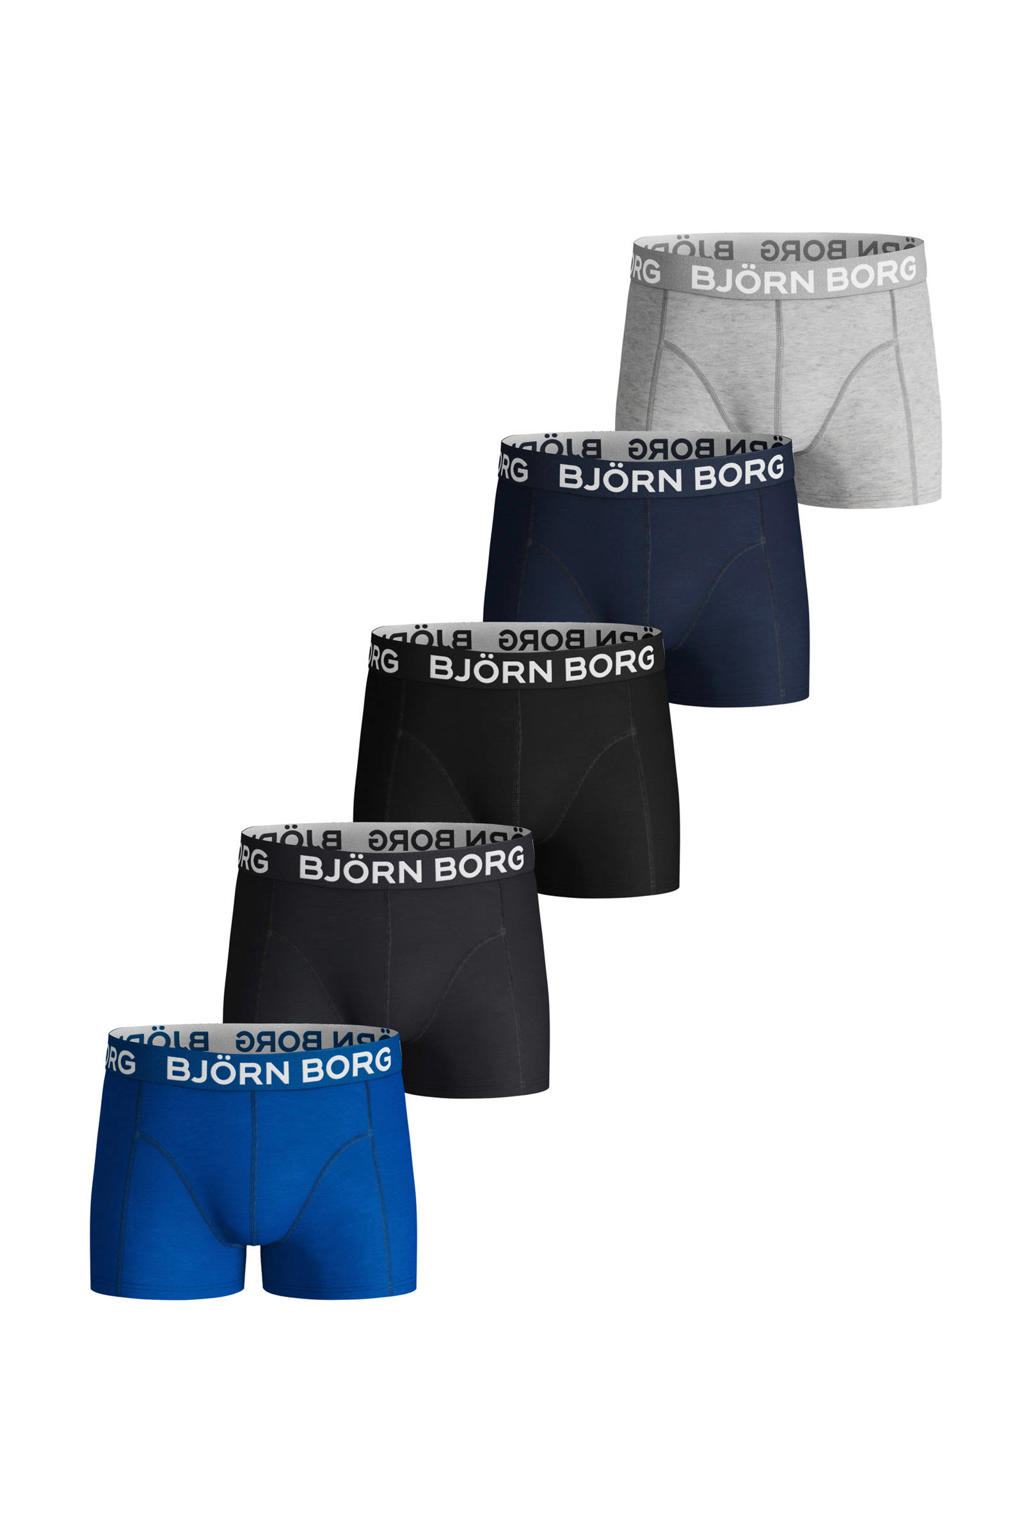 Björn Borg   boxershort - set van 5 blauw/zwart/grijs